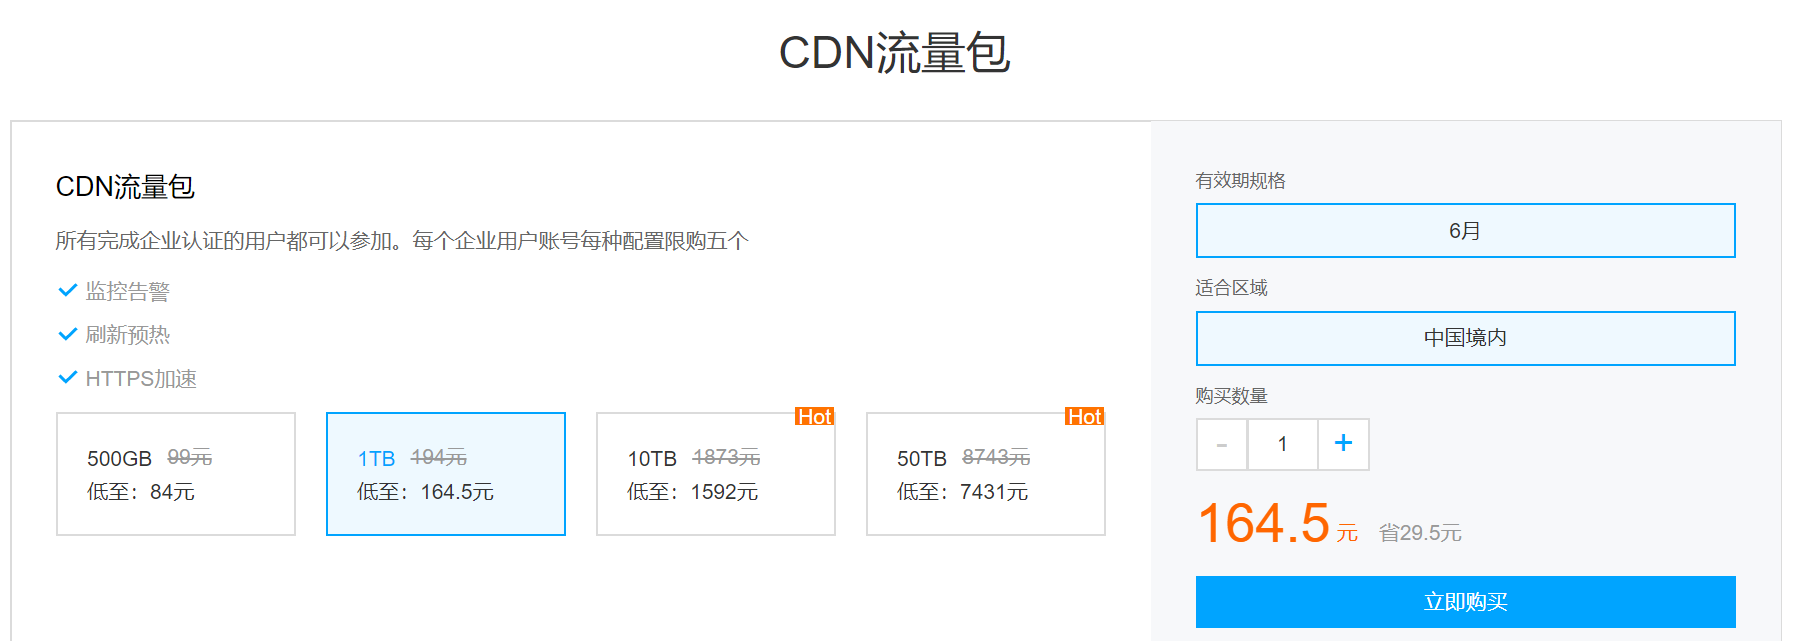 腾讯云企业上云特惠1TB中国境内CDN流量包164.5元